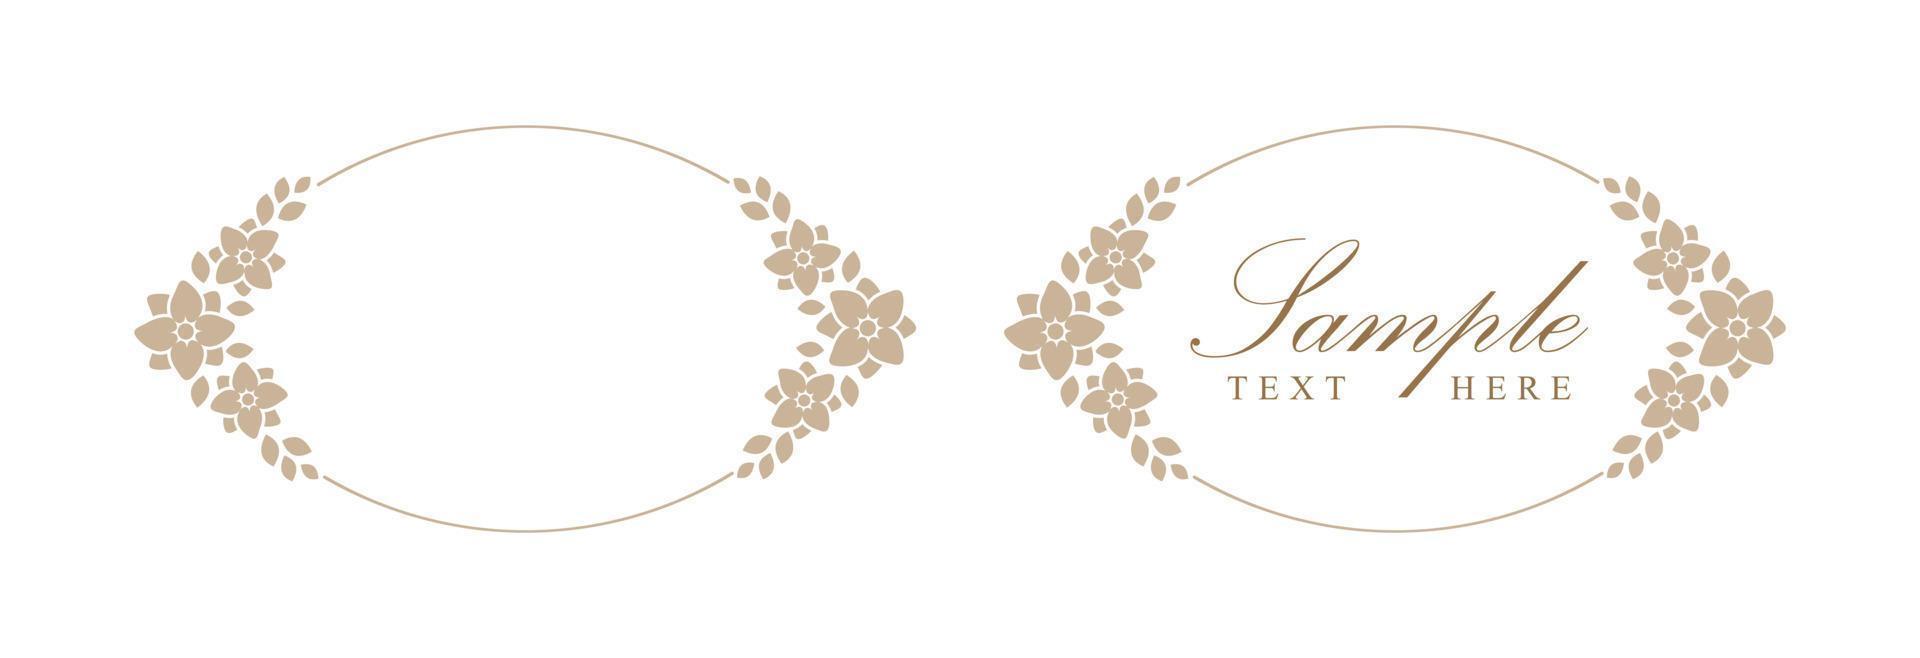 Floral beige arch frame. Botanical boho border vector illustration. Simple elegant romantic style for wedding events, card design, logo, labels, social media posts, templates